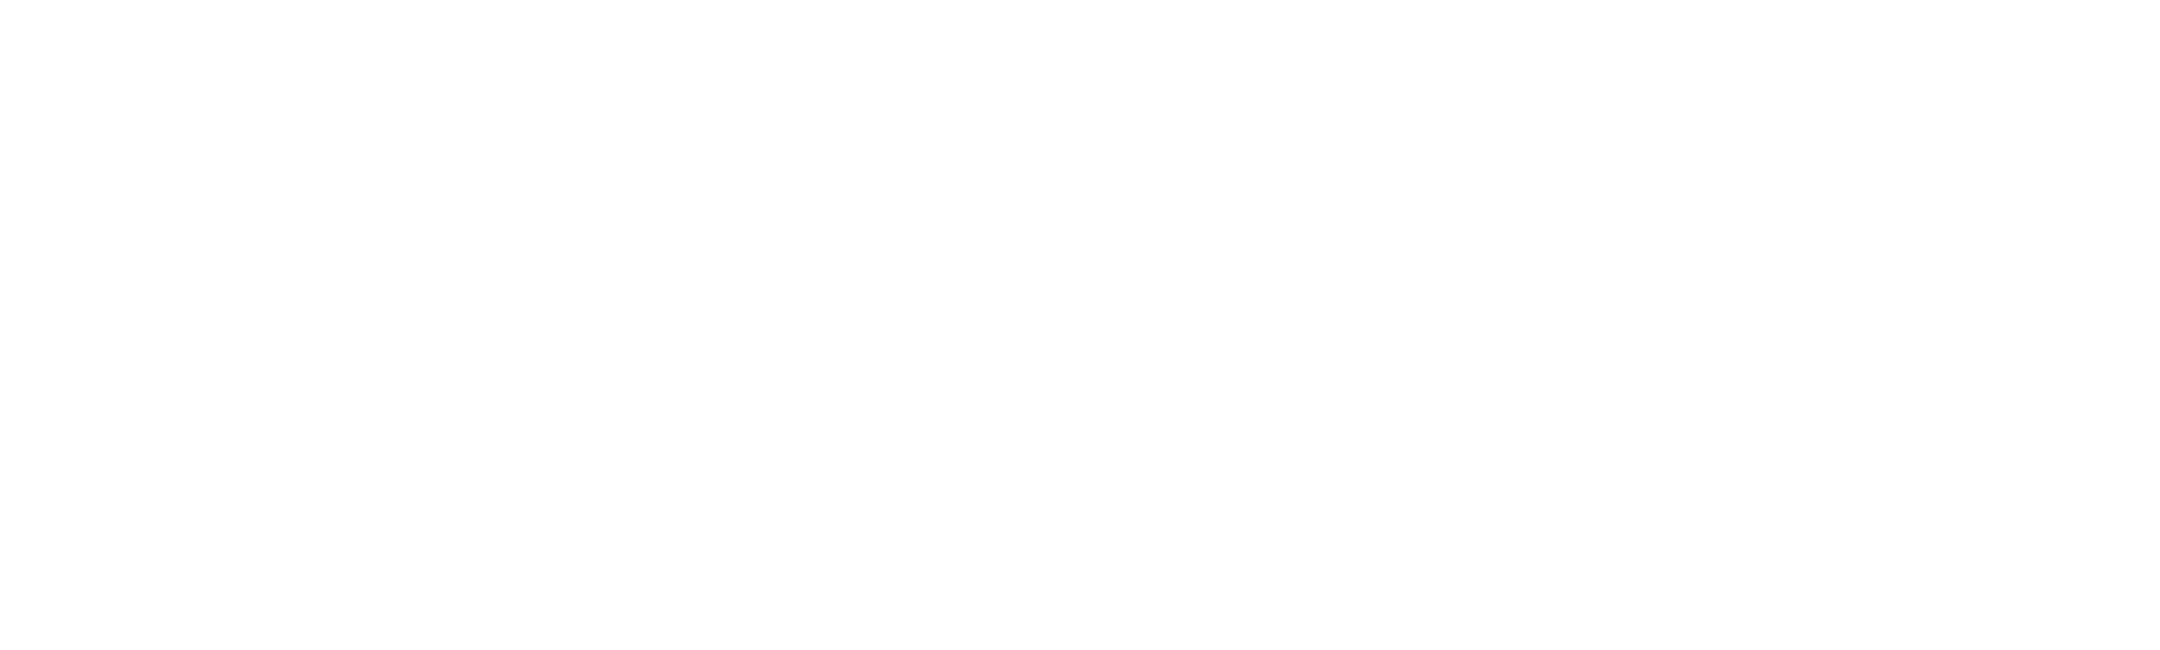 암호화폐 결제 시스템 - FSFPAY.com